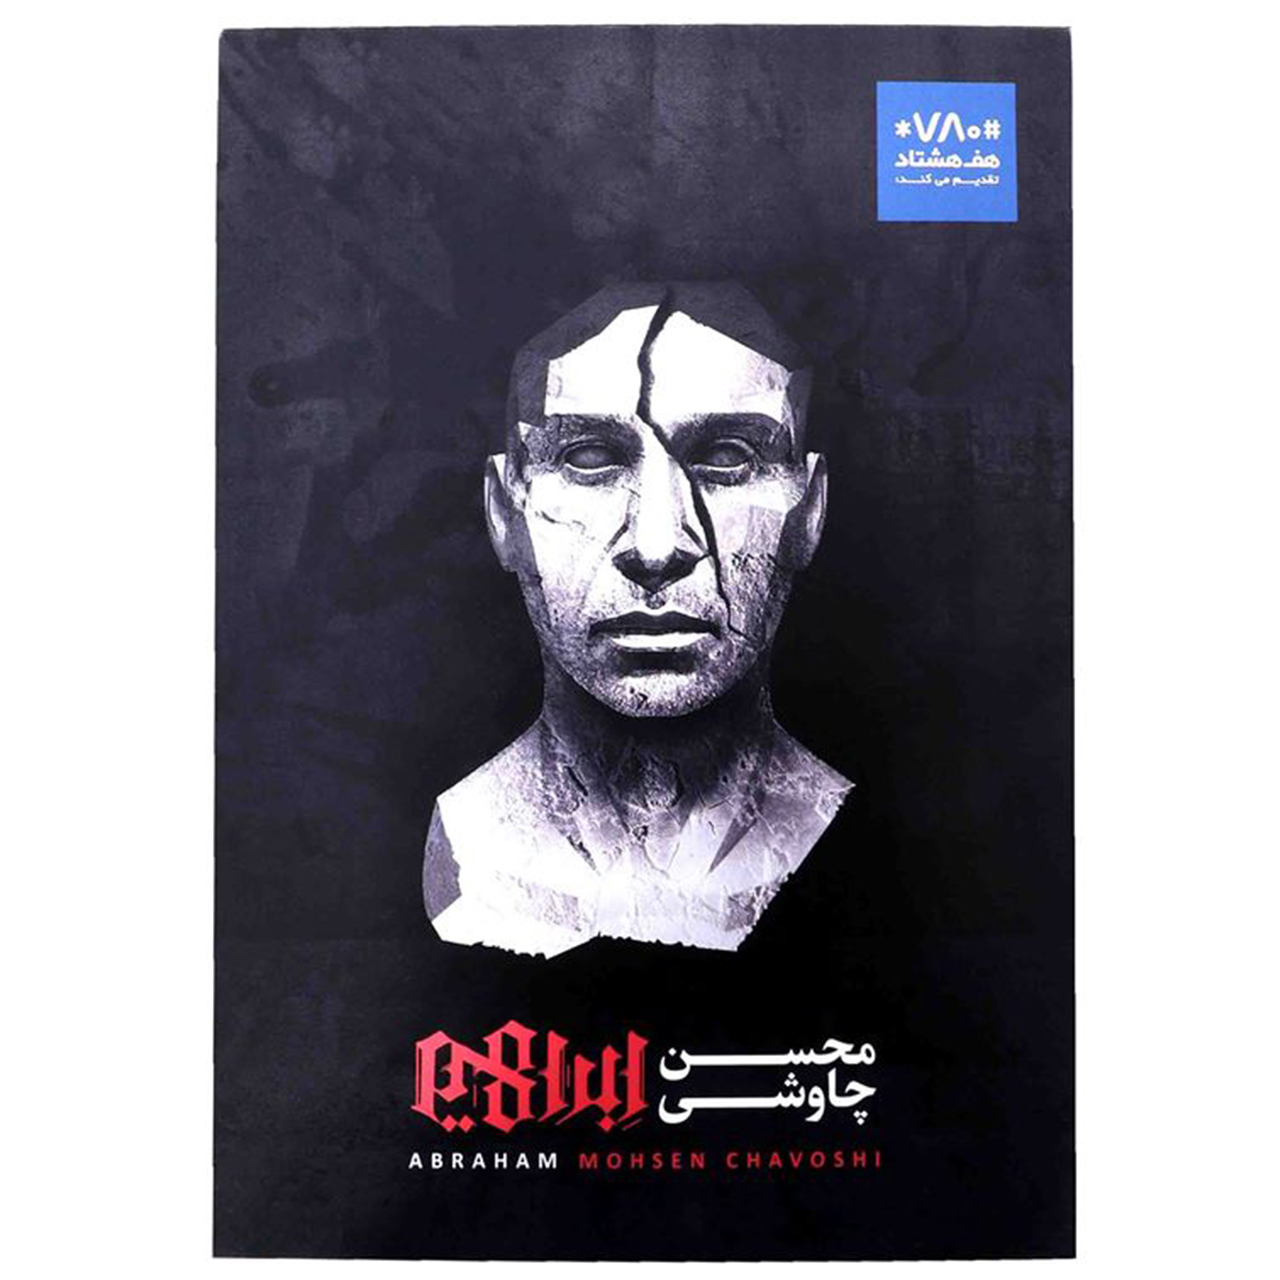 آلبوم موسیقی امضا شده ابراهیم اثر محسن چاوشی بسته بندی VIP به همراه کتاب امضا شده منجنیق اثر حسین صفا